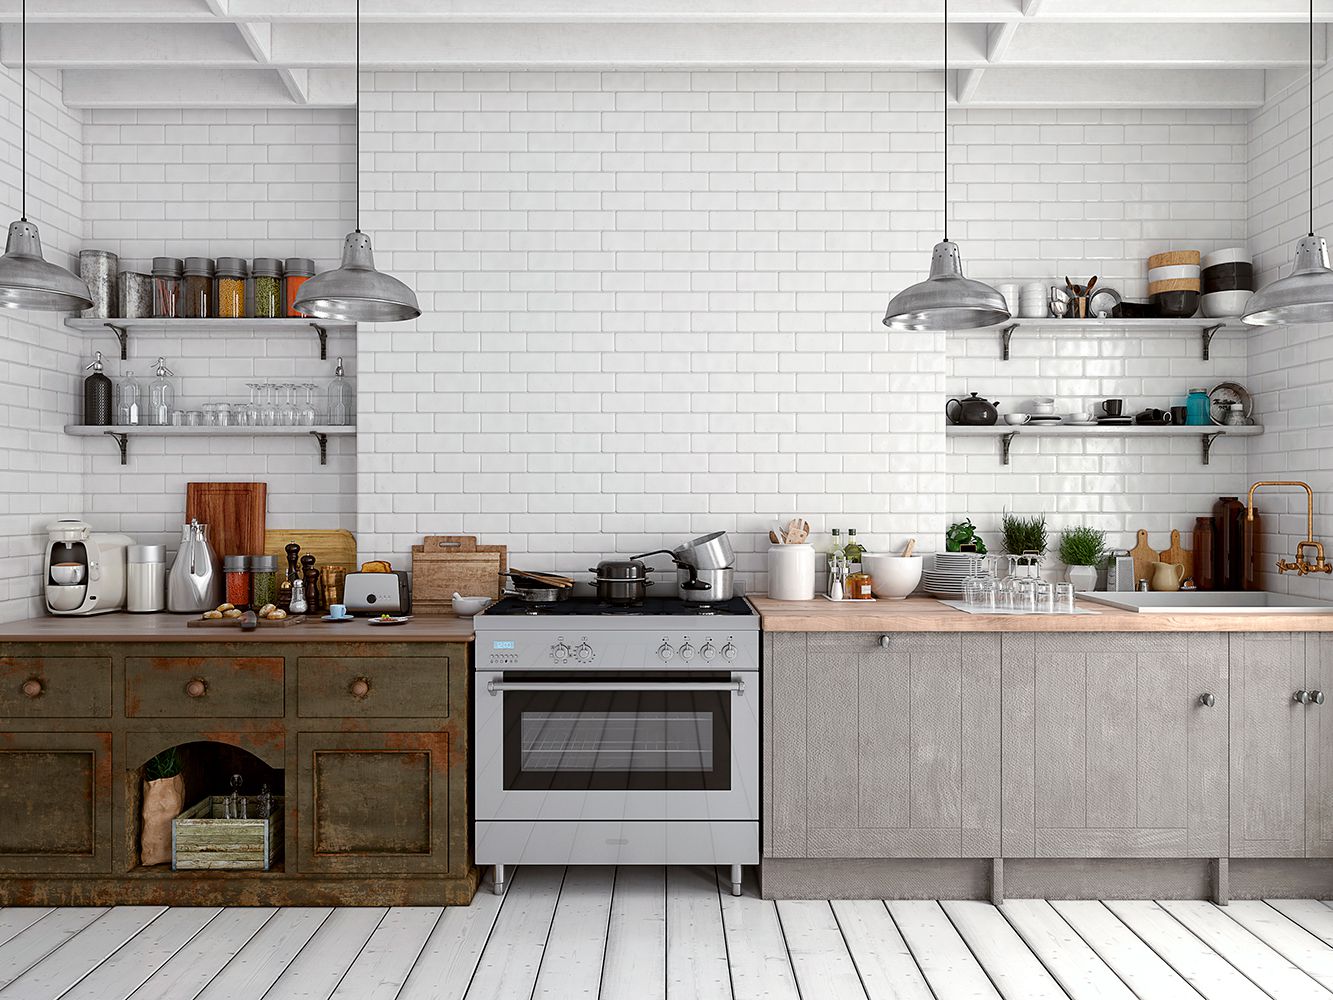 White Brick Tile Backsplash Kitchen Fresh the Best Kitchen Backsplash Materials